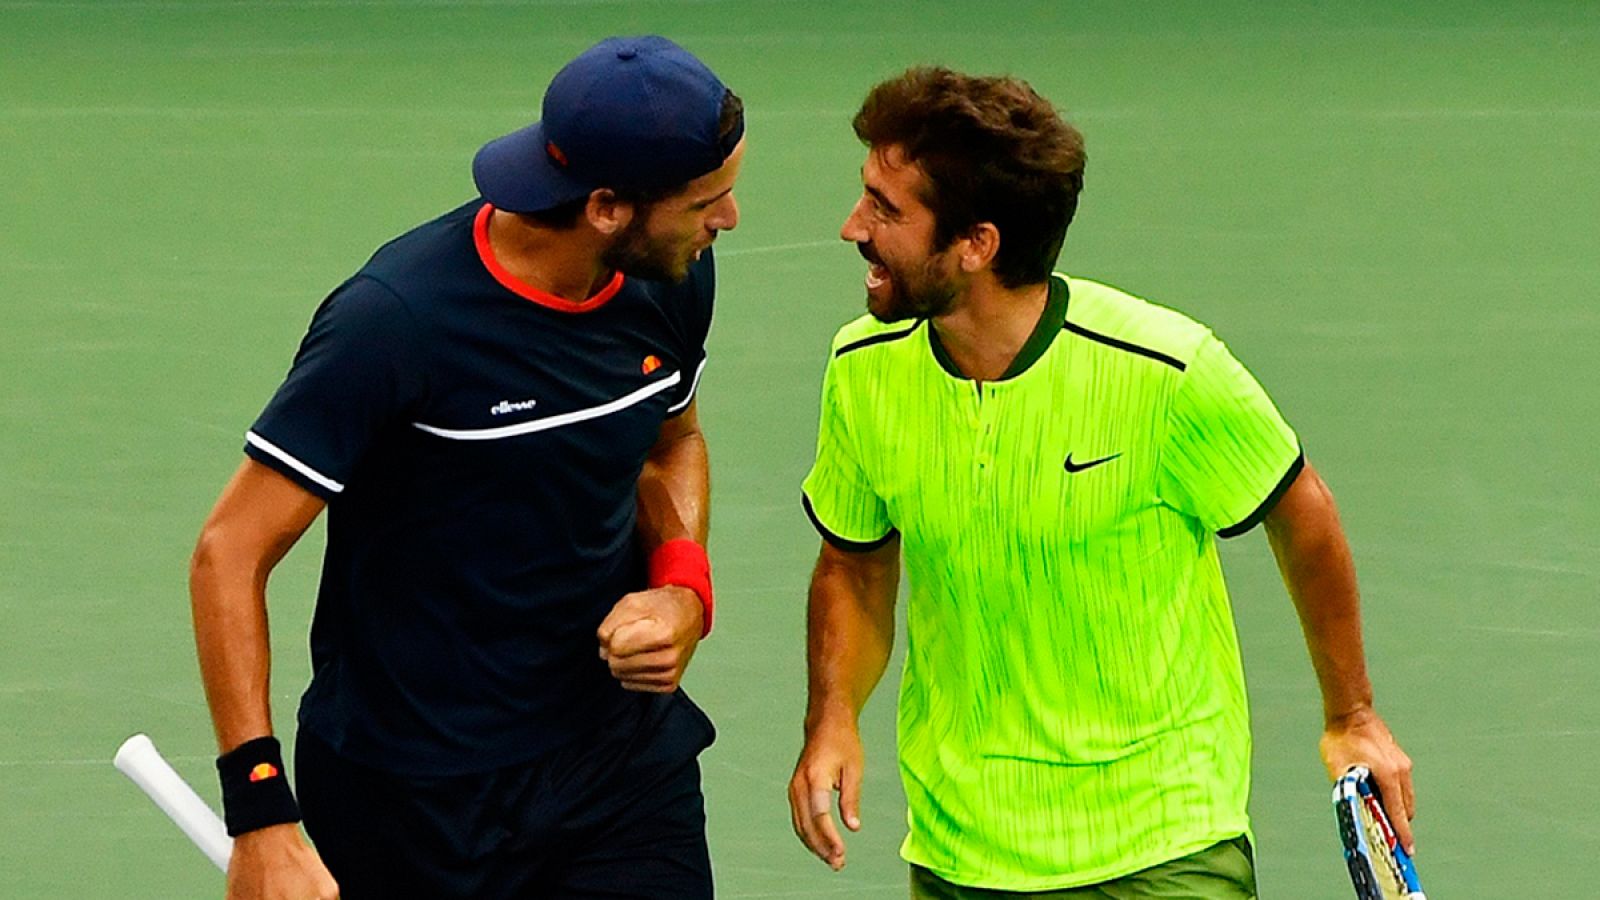 Feliciano López y Marc López celebran la victoria contra los hermanos Bryan en los cuartos de final de dobles del US Open.